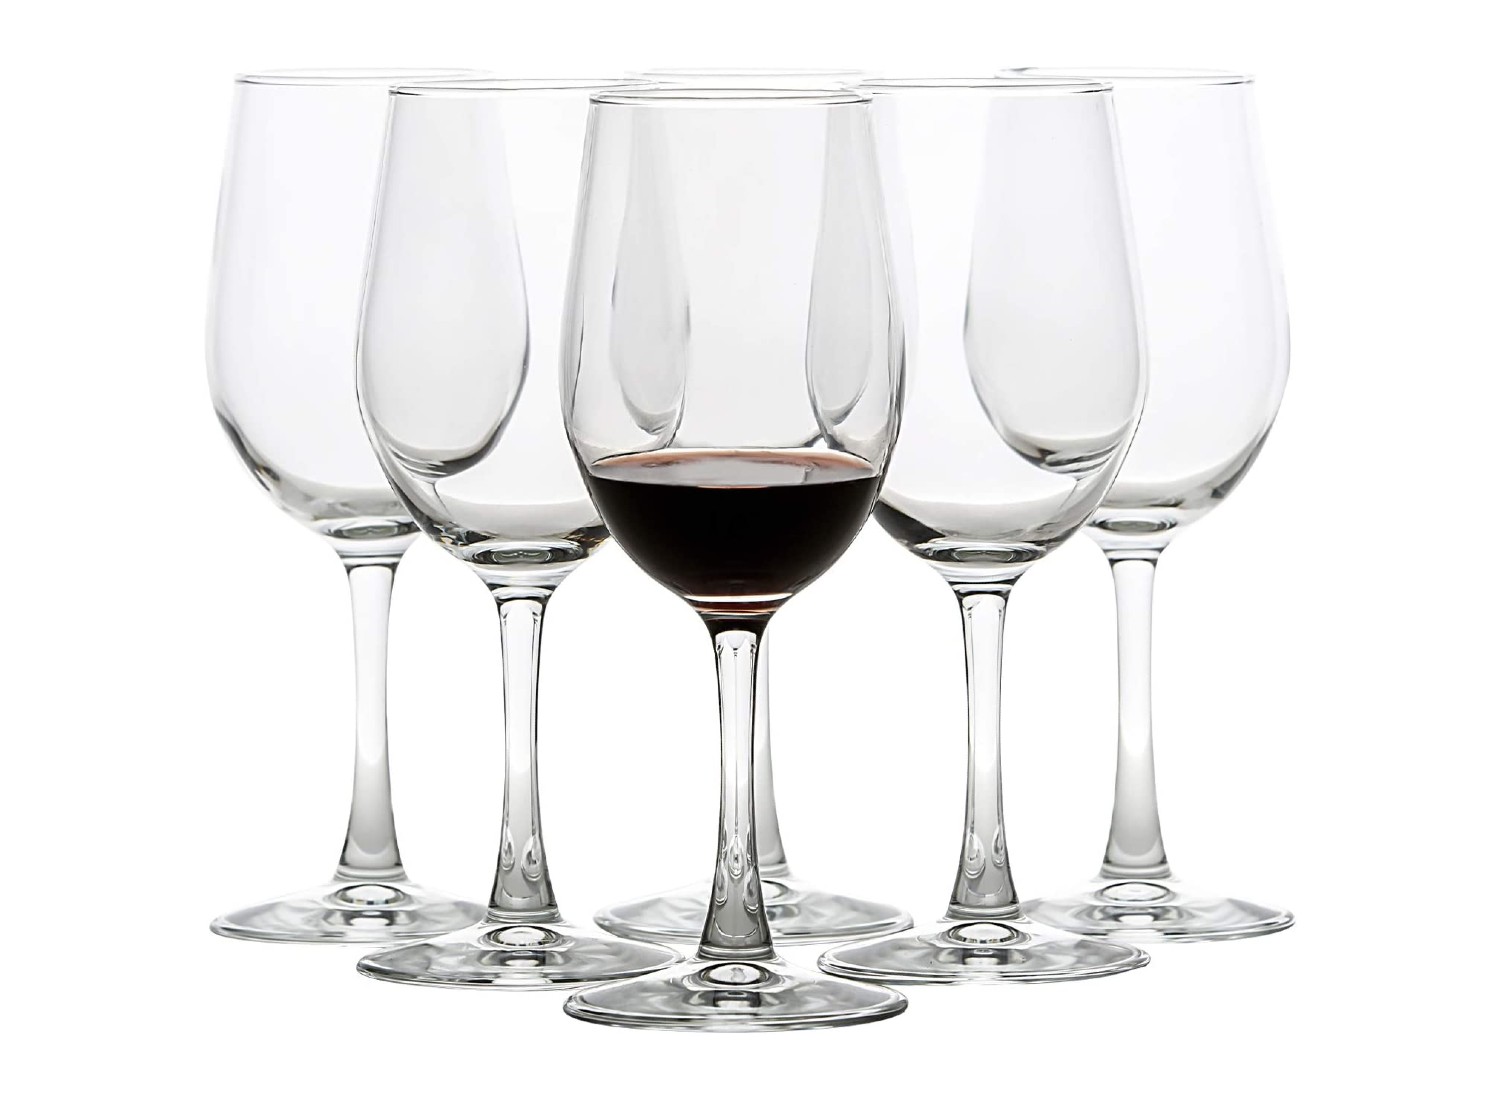 https://www.brit.co/reviews/wp-content/uploads/2023/04/UMI-UMIZILI-white-wine-glasses-britco.jpg